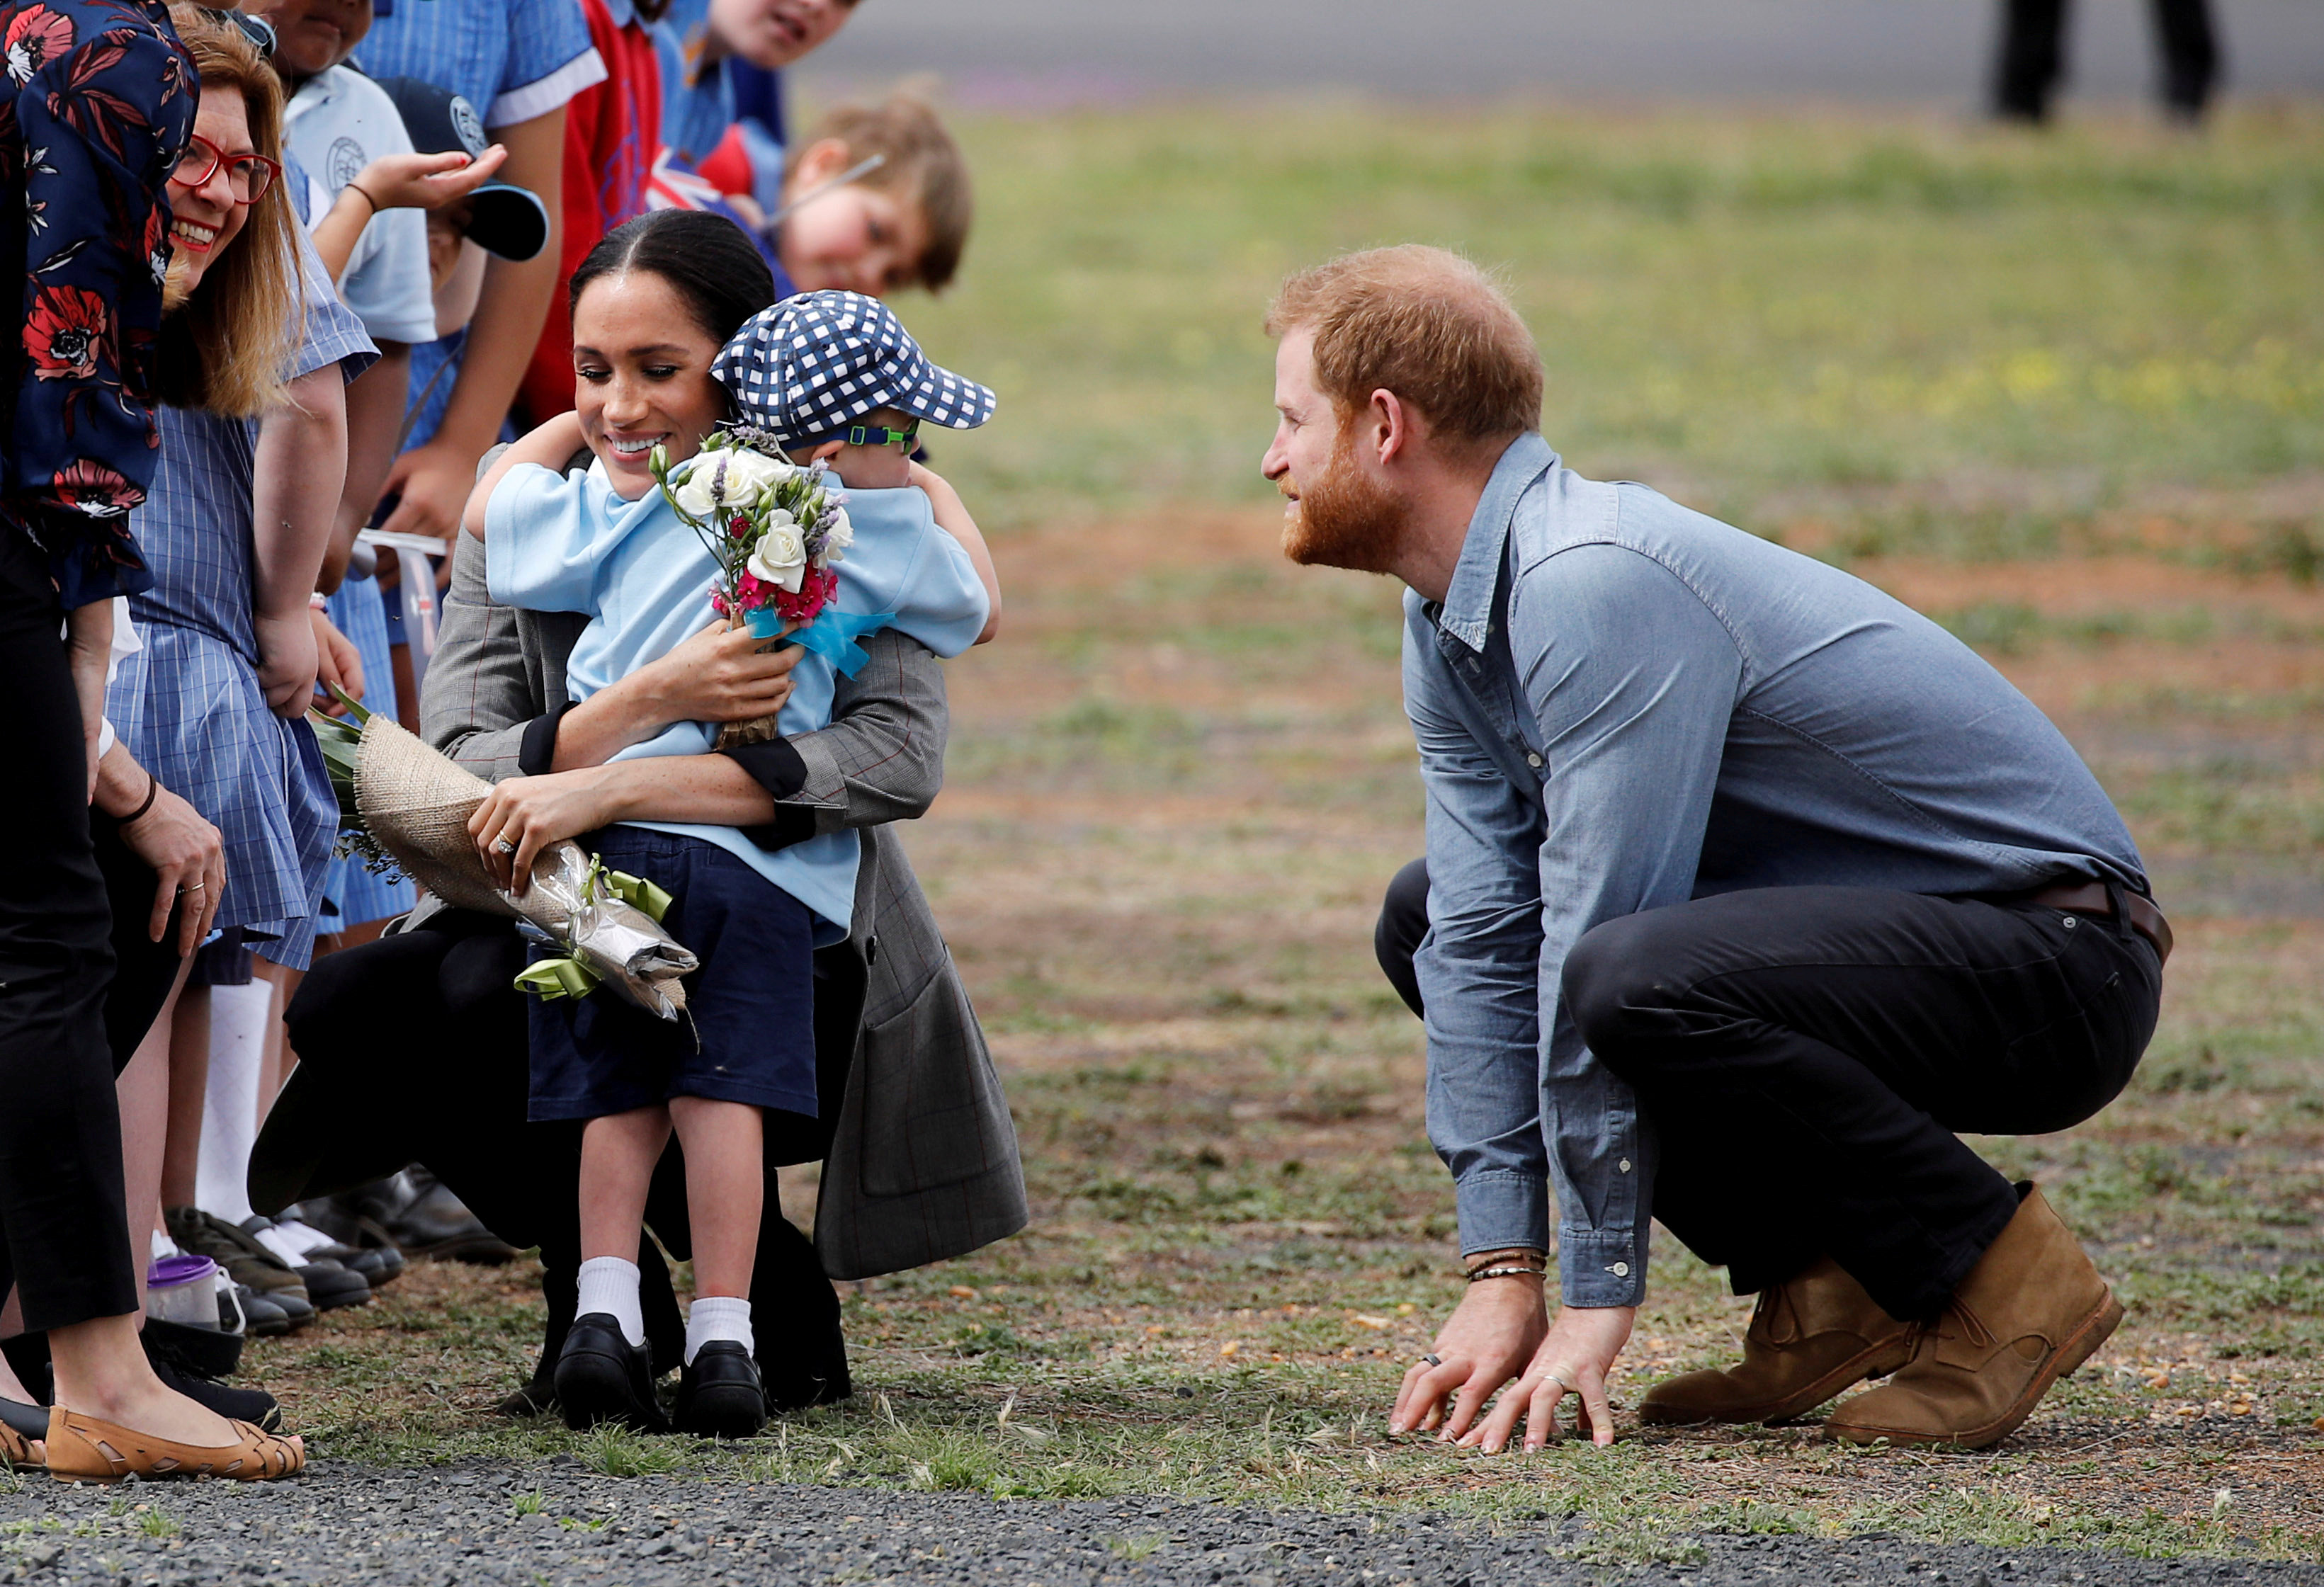 بالفيديو.. رد فعل طفل من ذوي الاحتياجات عند رؤية الأمير هاري يثير الذهول!